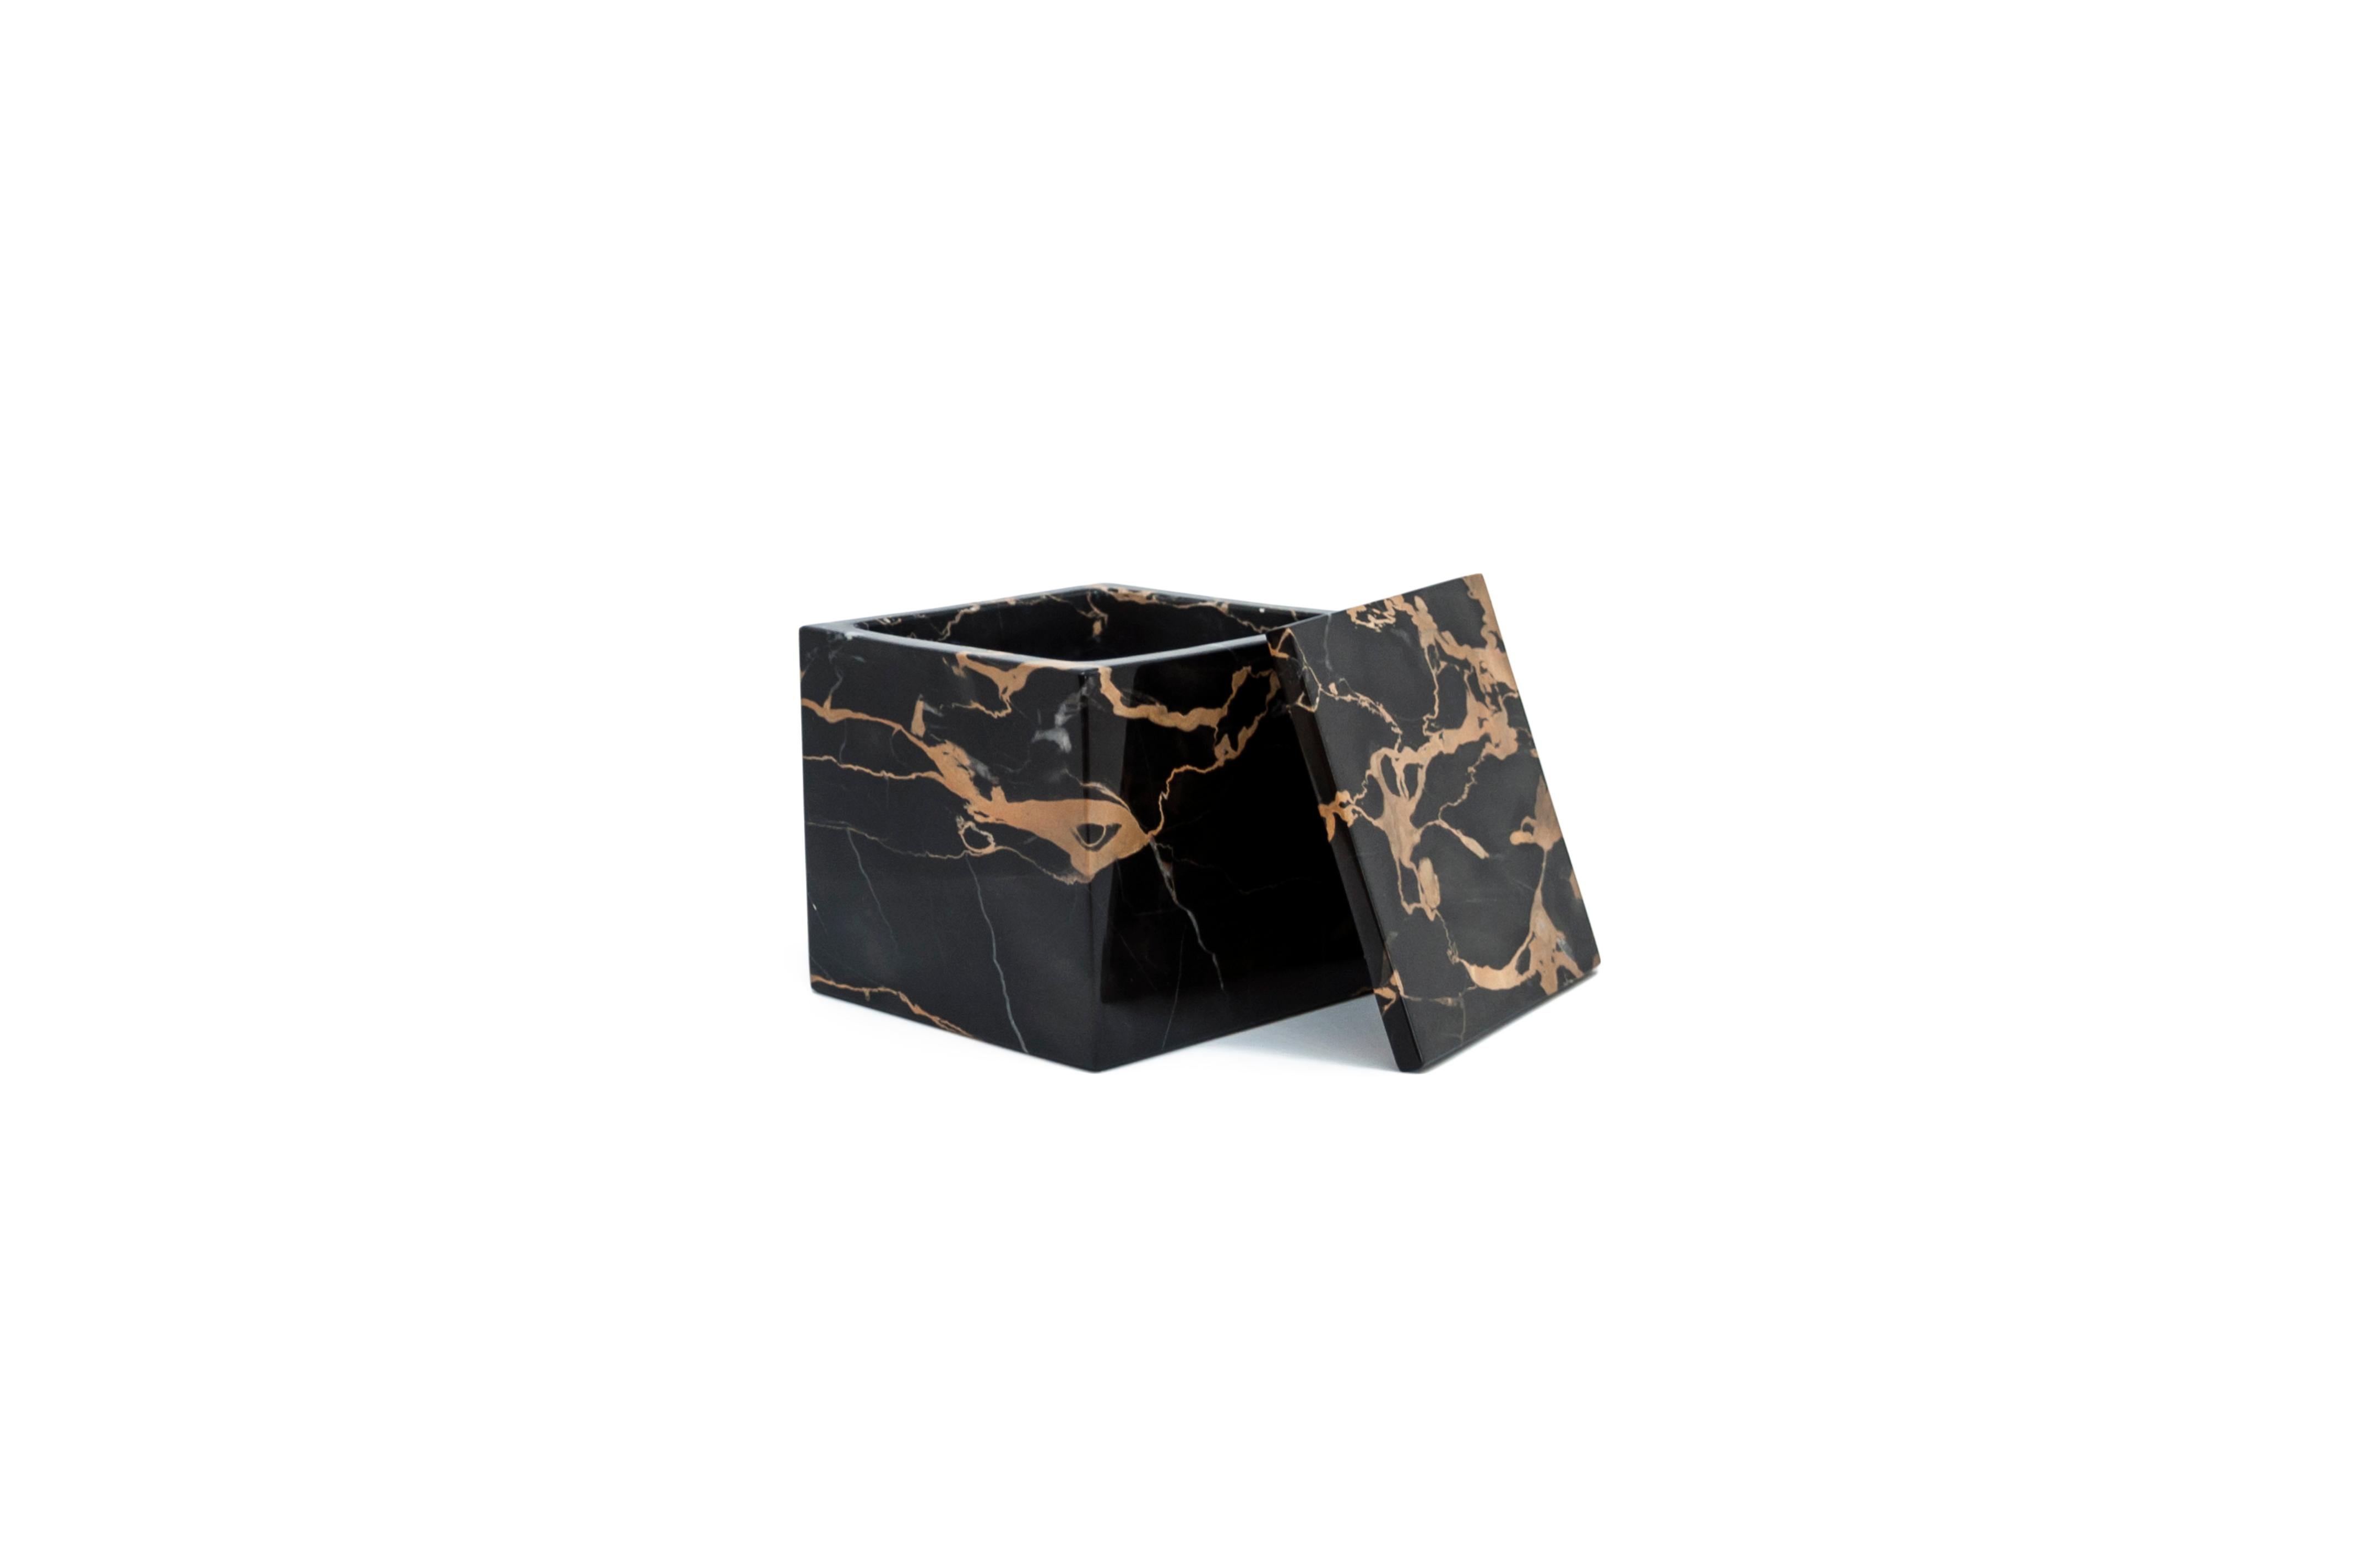 Ein luxuriöser quadratischer Dosenhalter aus dem seltenen und schönen Portoro-Marmor, der sich durch eine schwarze Basis und goldene natürliche Adern auszeichnet. Schachtelhalter Größe 9,5 x 9,5 x 9,5 cm.
Jedes Stück ist ein Unikat (da jeder